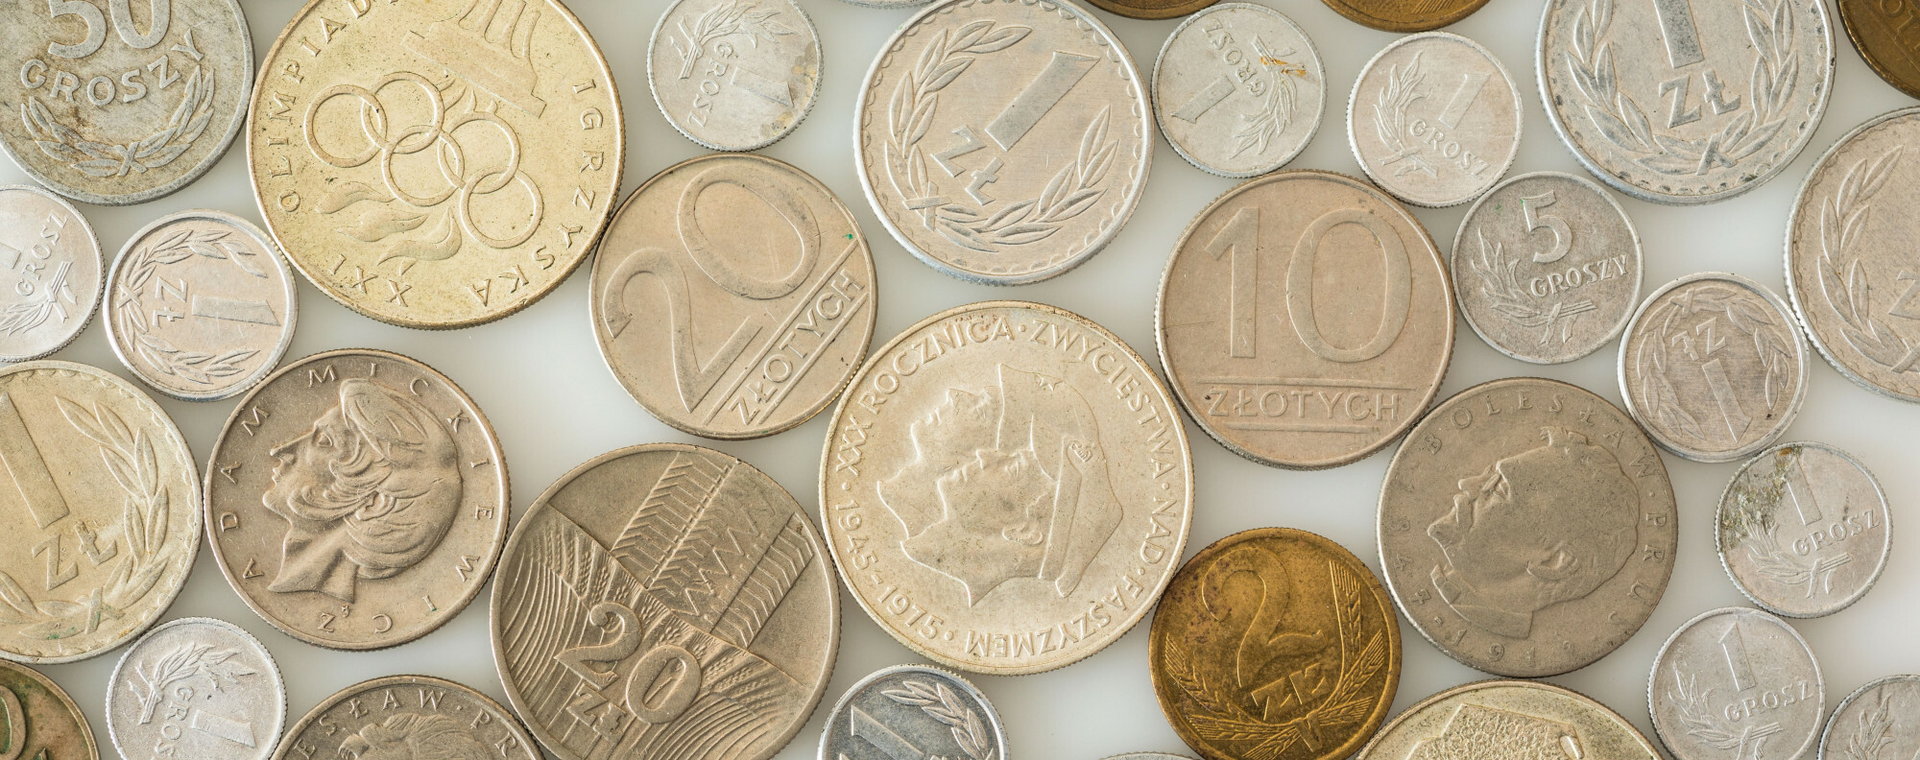 Szczególnie w ostatnich latach widać duży wzrost zainteresowania tematyką monet z peerelu. 